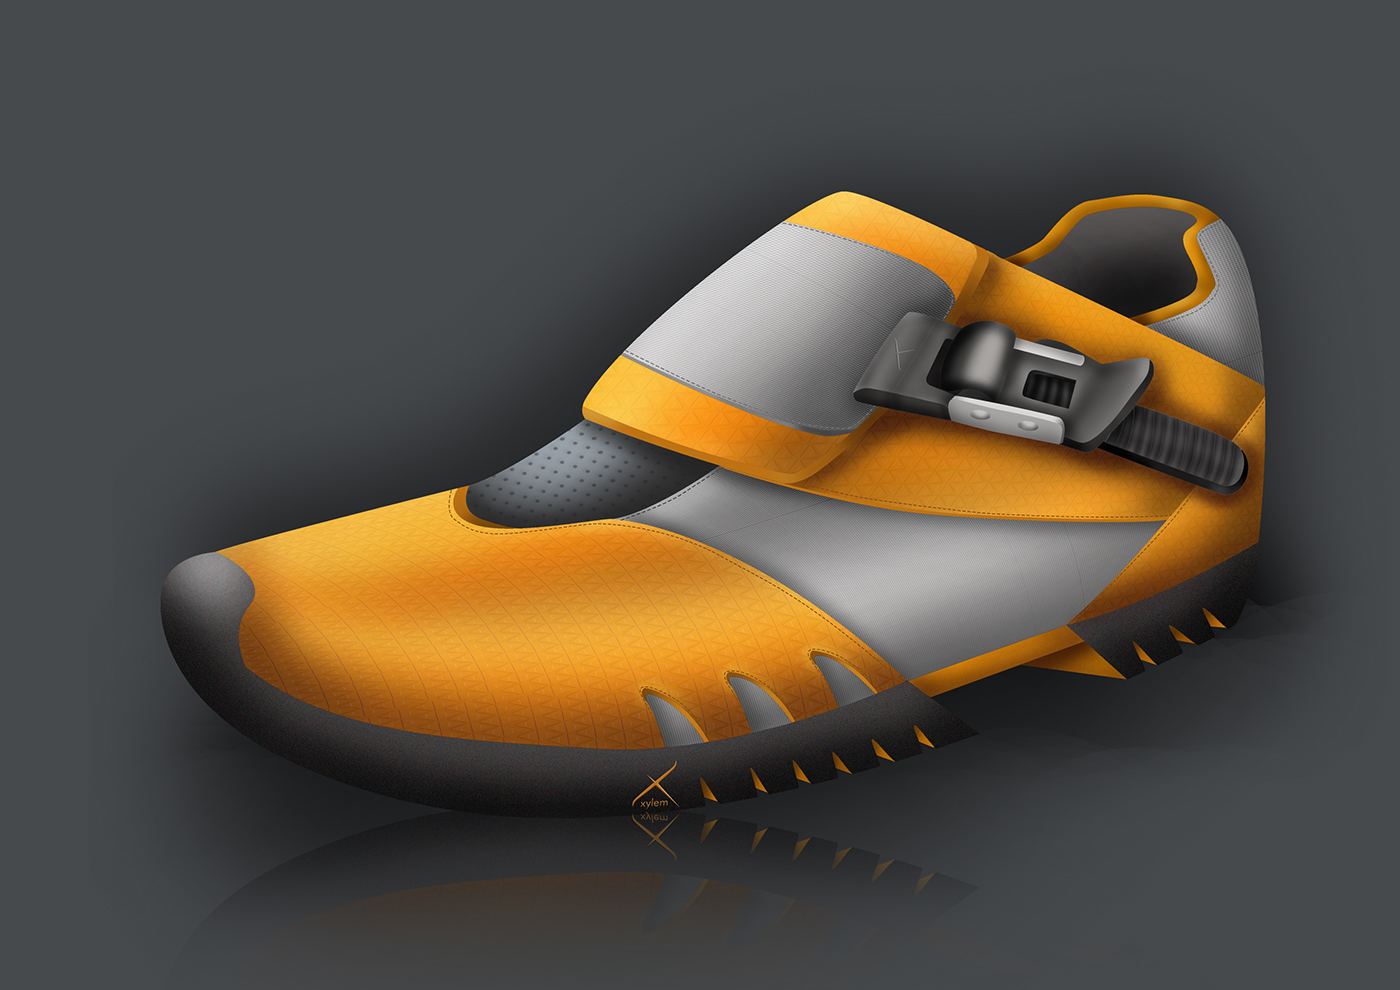 industrialdesign footwear sportgear shoedesign Bike Massey University shoe design Foot wear design